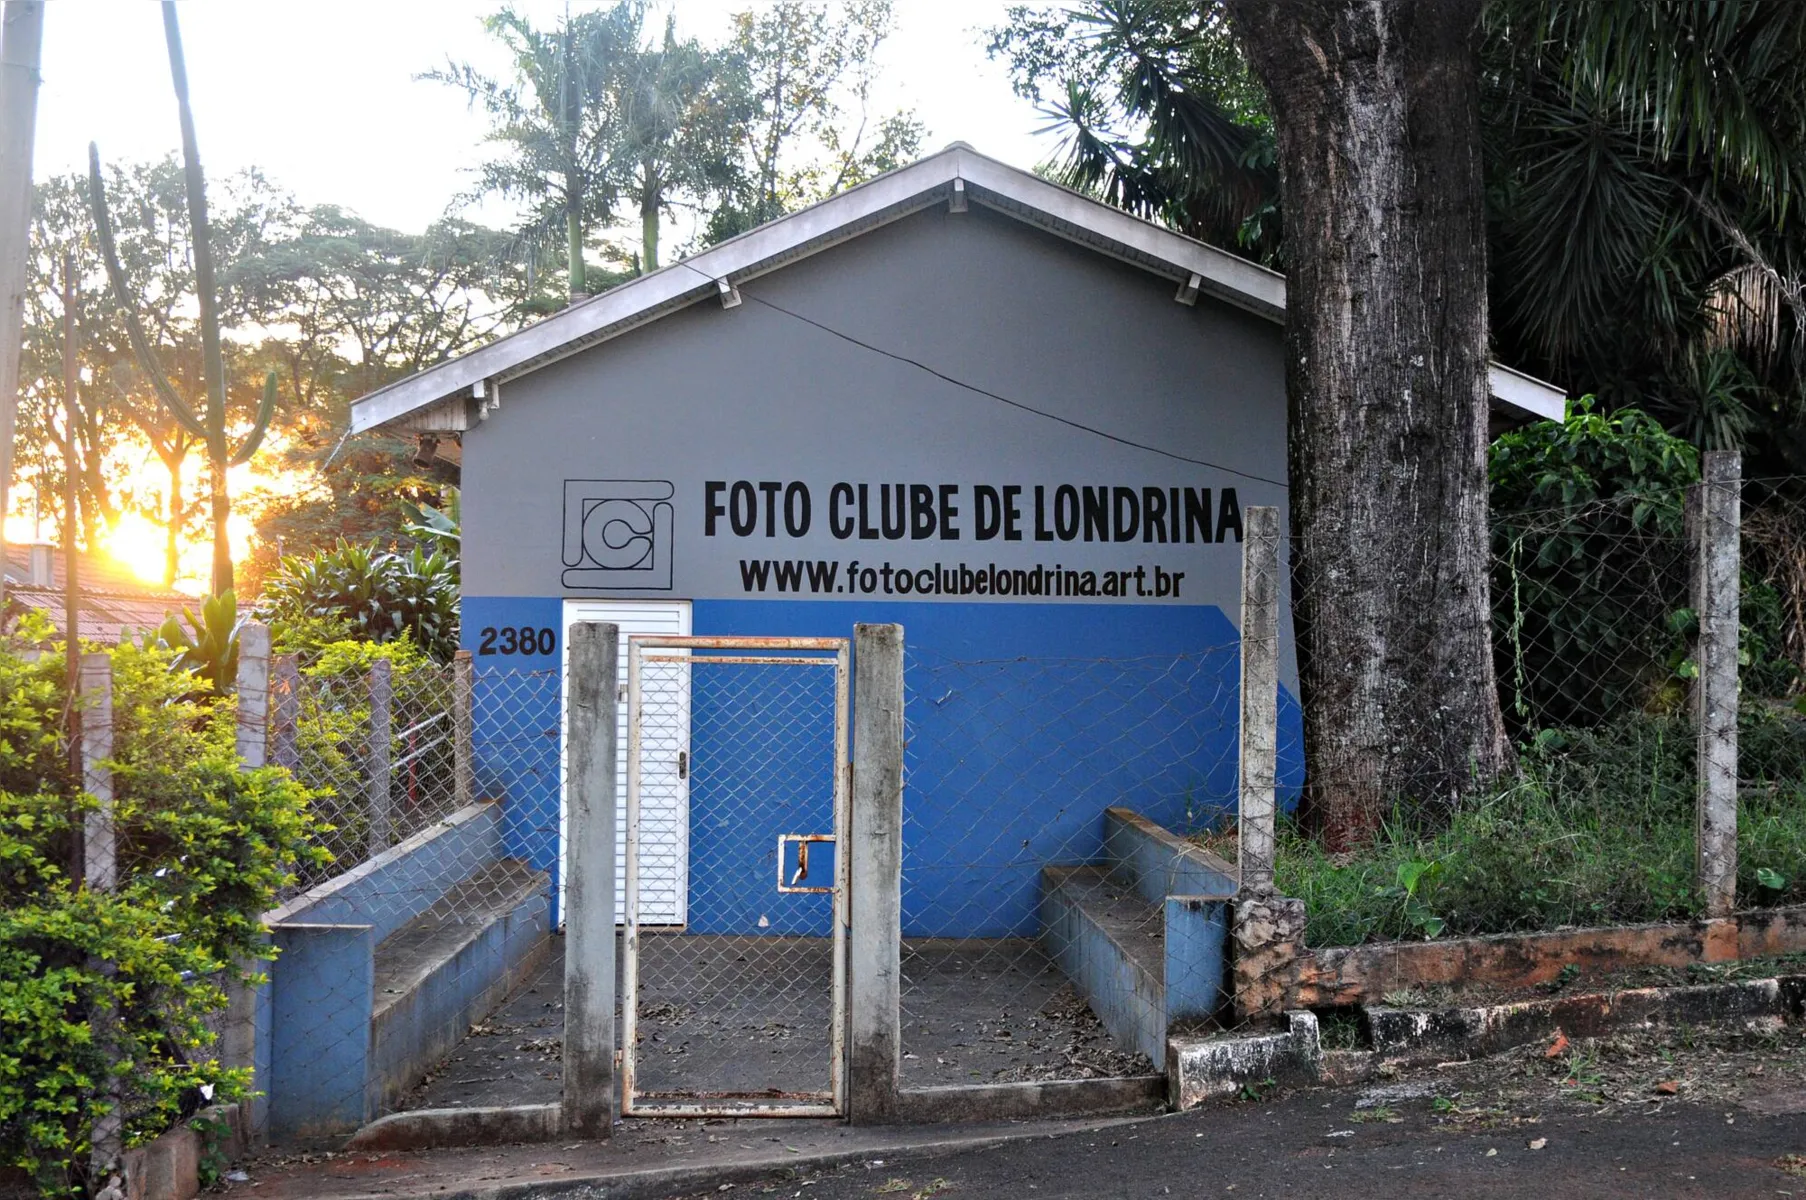 Sede do Foto Clube de Londrina localizado no Lago Igapó